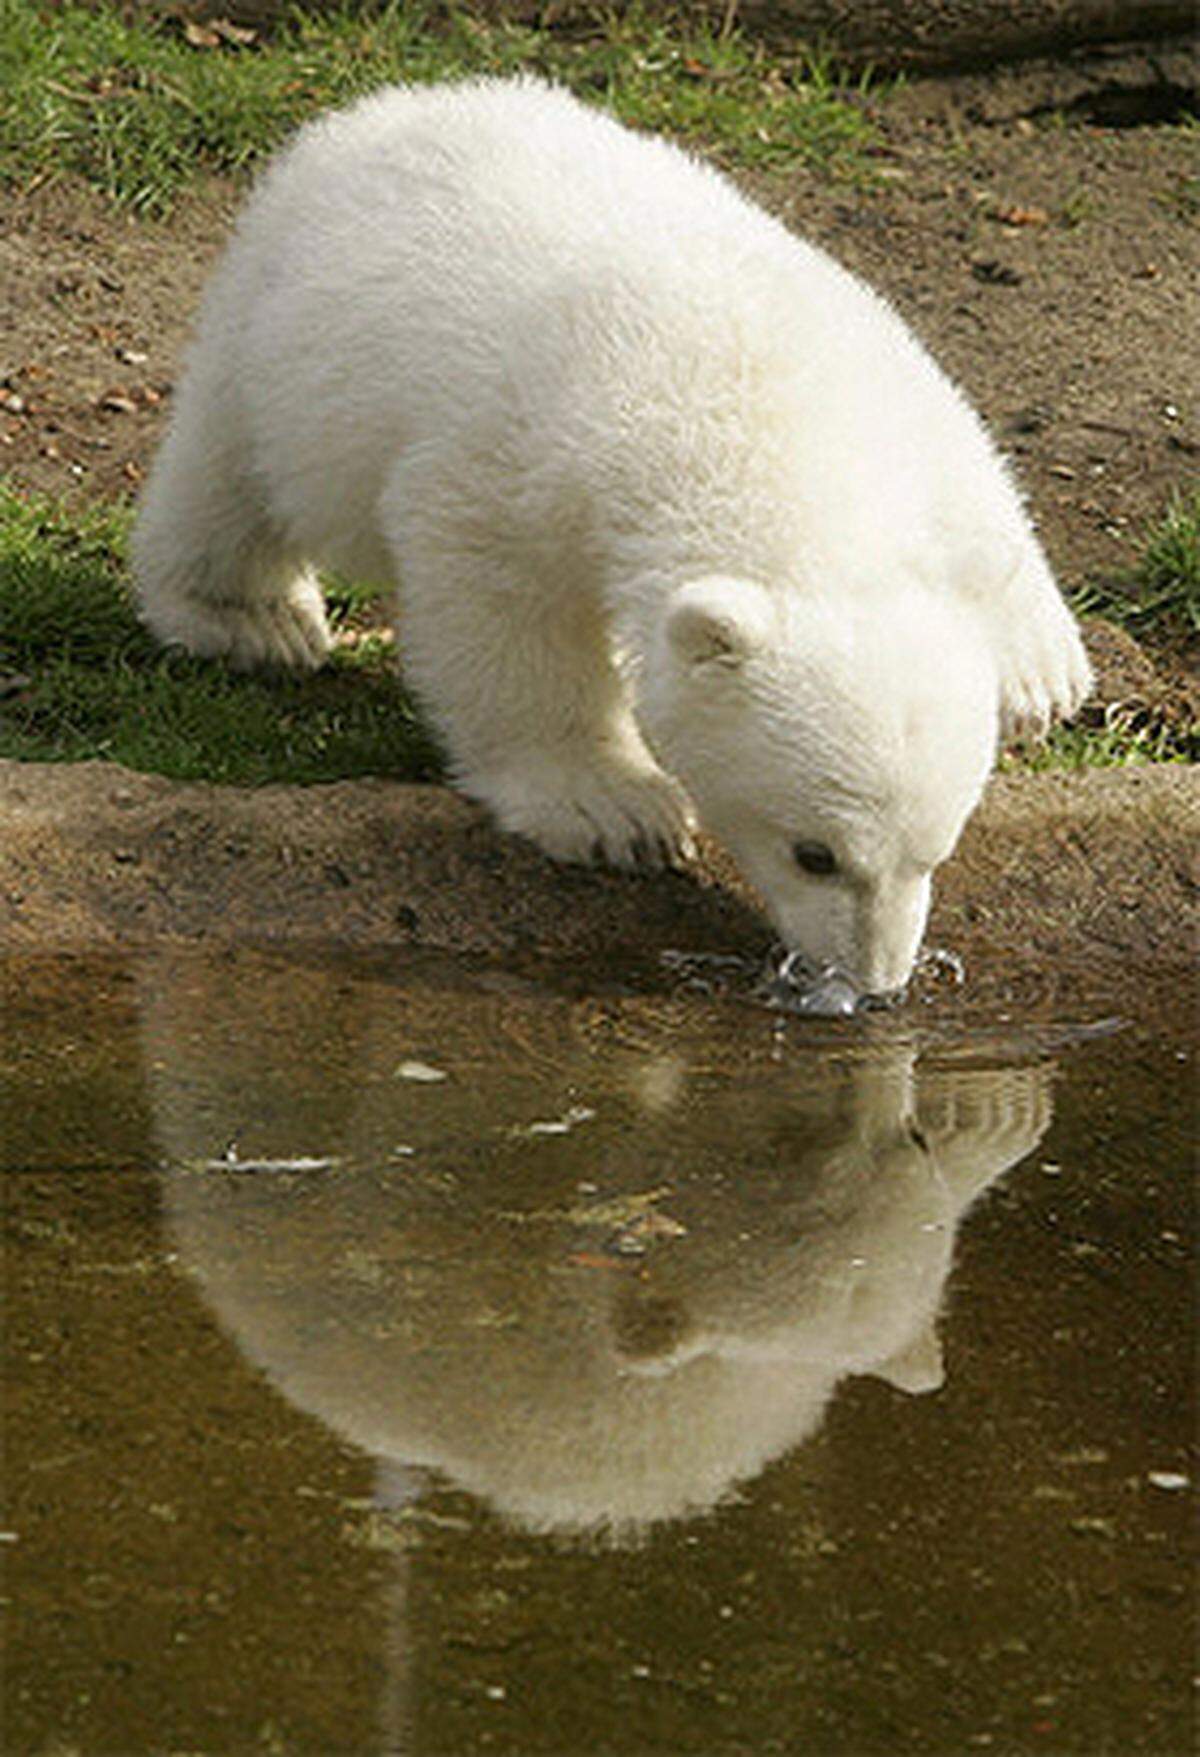 An den zum Gehege gehörenden Teich wagte sich Knut zunächst nur zögerlich heran. Nachdem er die schwarze Nasenspitze aber ein paar Mal ins Wasser gesteckt hatte, hielt den Eisbären nichts mehr: Er nahm gleich mehrmals ein Bad.